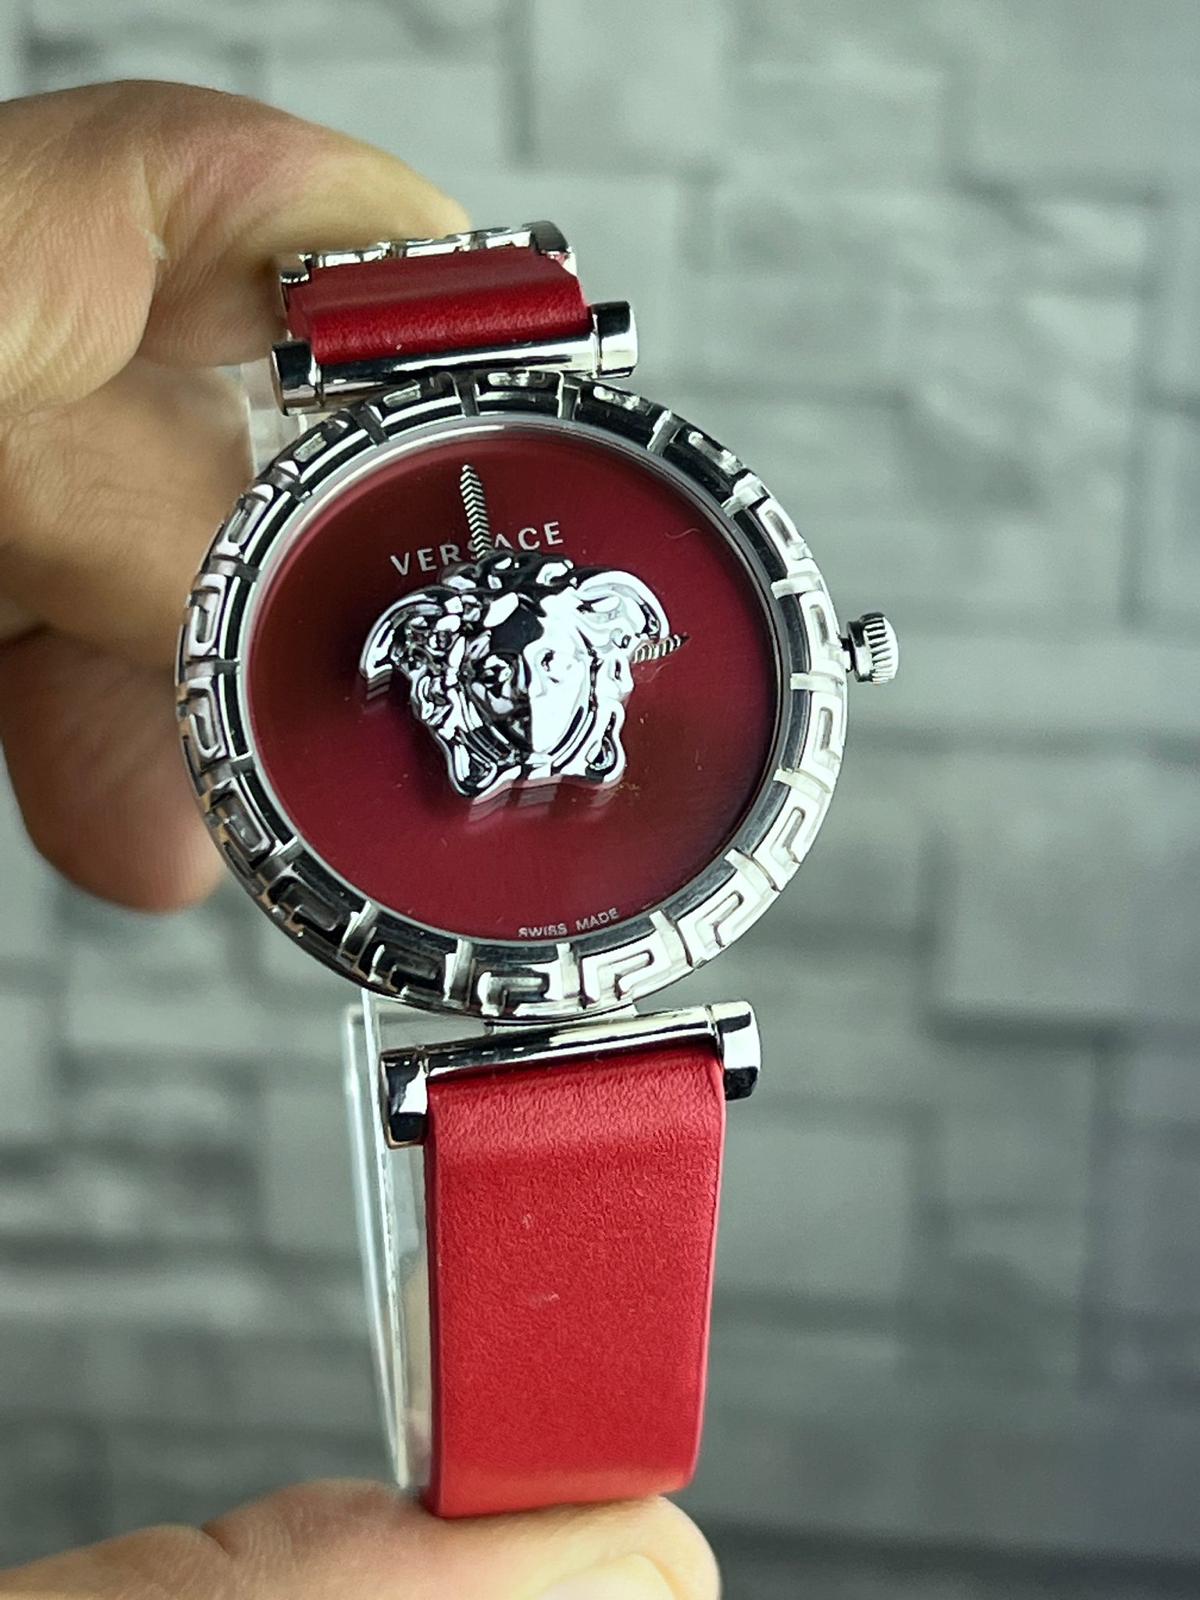 DP181- Versace Gümüş Kasa Kırmızı Kadran Kadın Saati